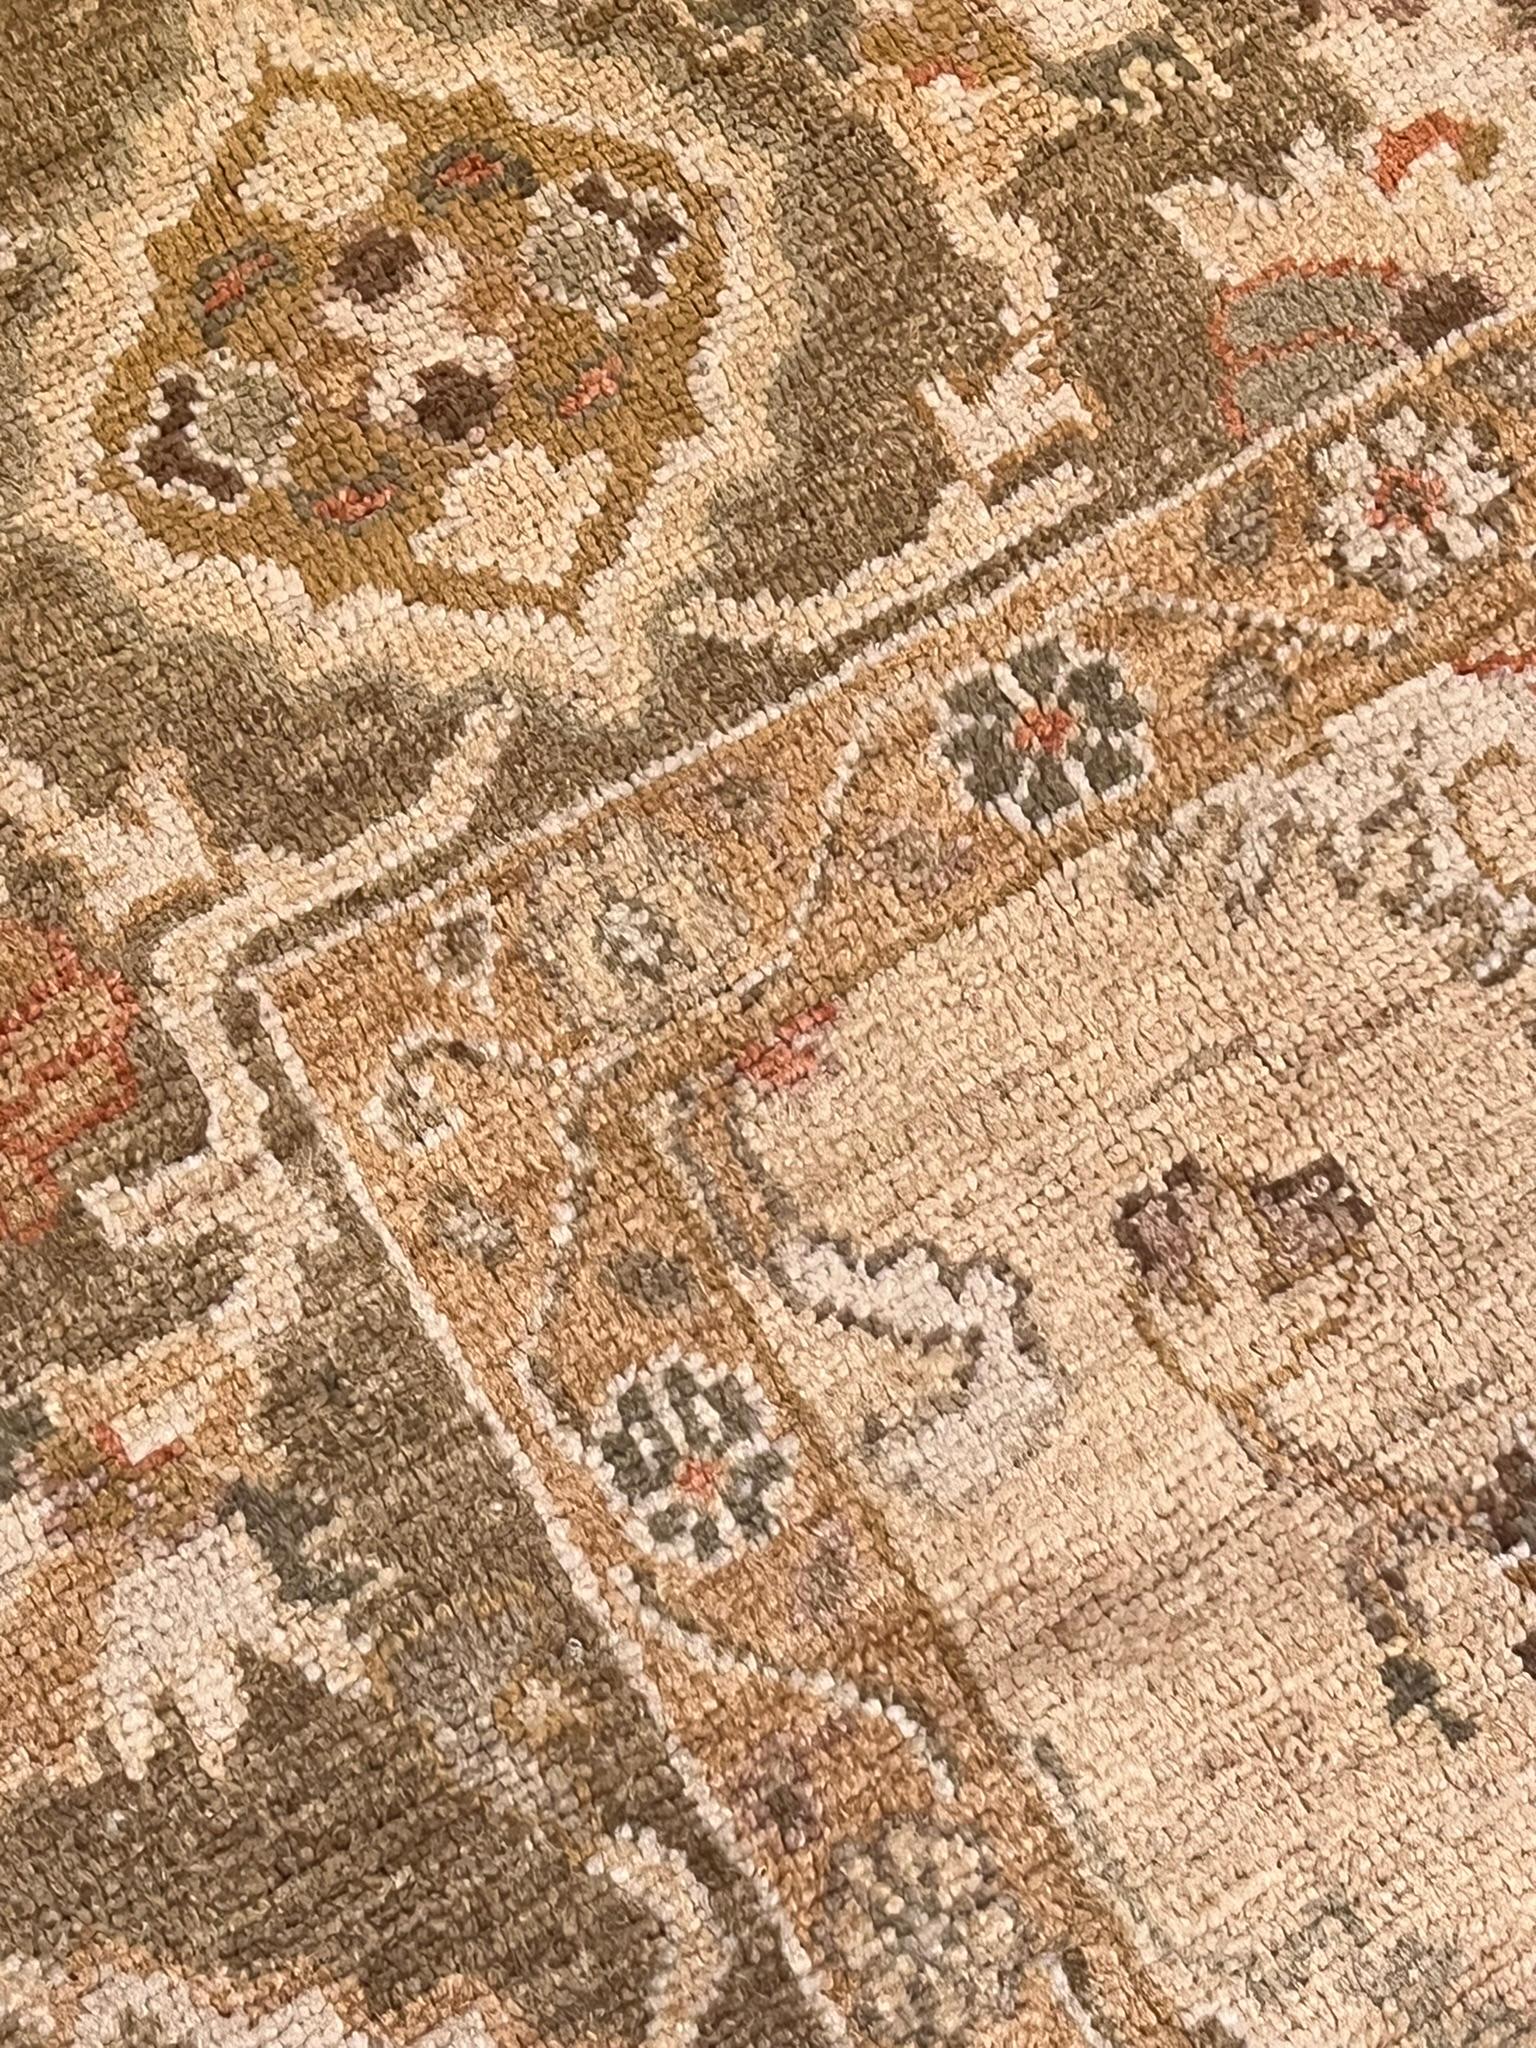 Il s'agit d'un tapis turc de nouvelle génération. Noué à la main avec de la laine en chaîne et en trame, il reprend la technique et le motif des thèmes classiques des anciens tapis Oushak, mais en renouvelant les couleurs, qui sont maintenant